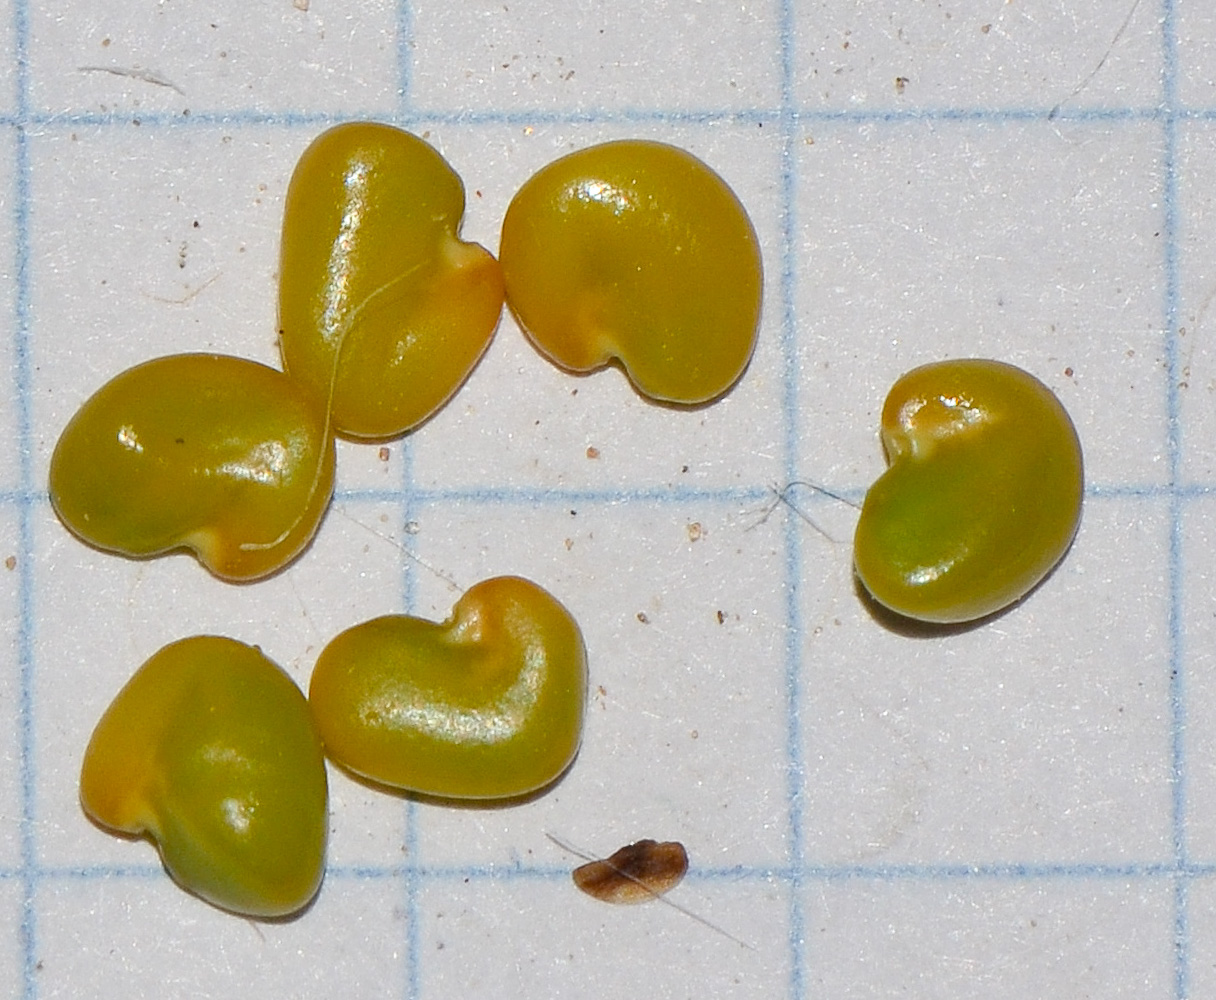 Изображение особи Astragalus amalecitanus.